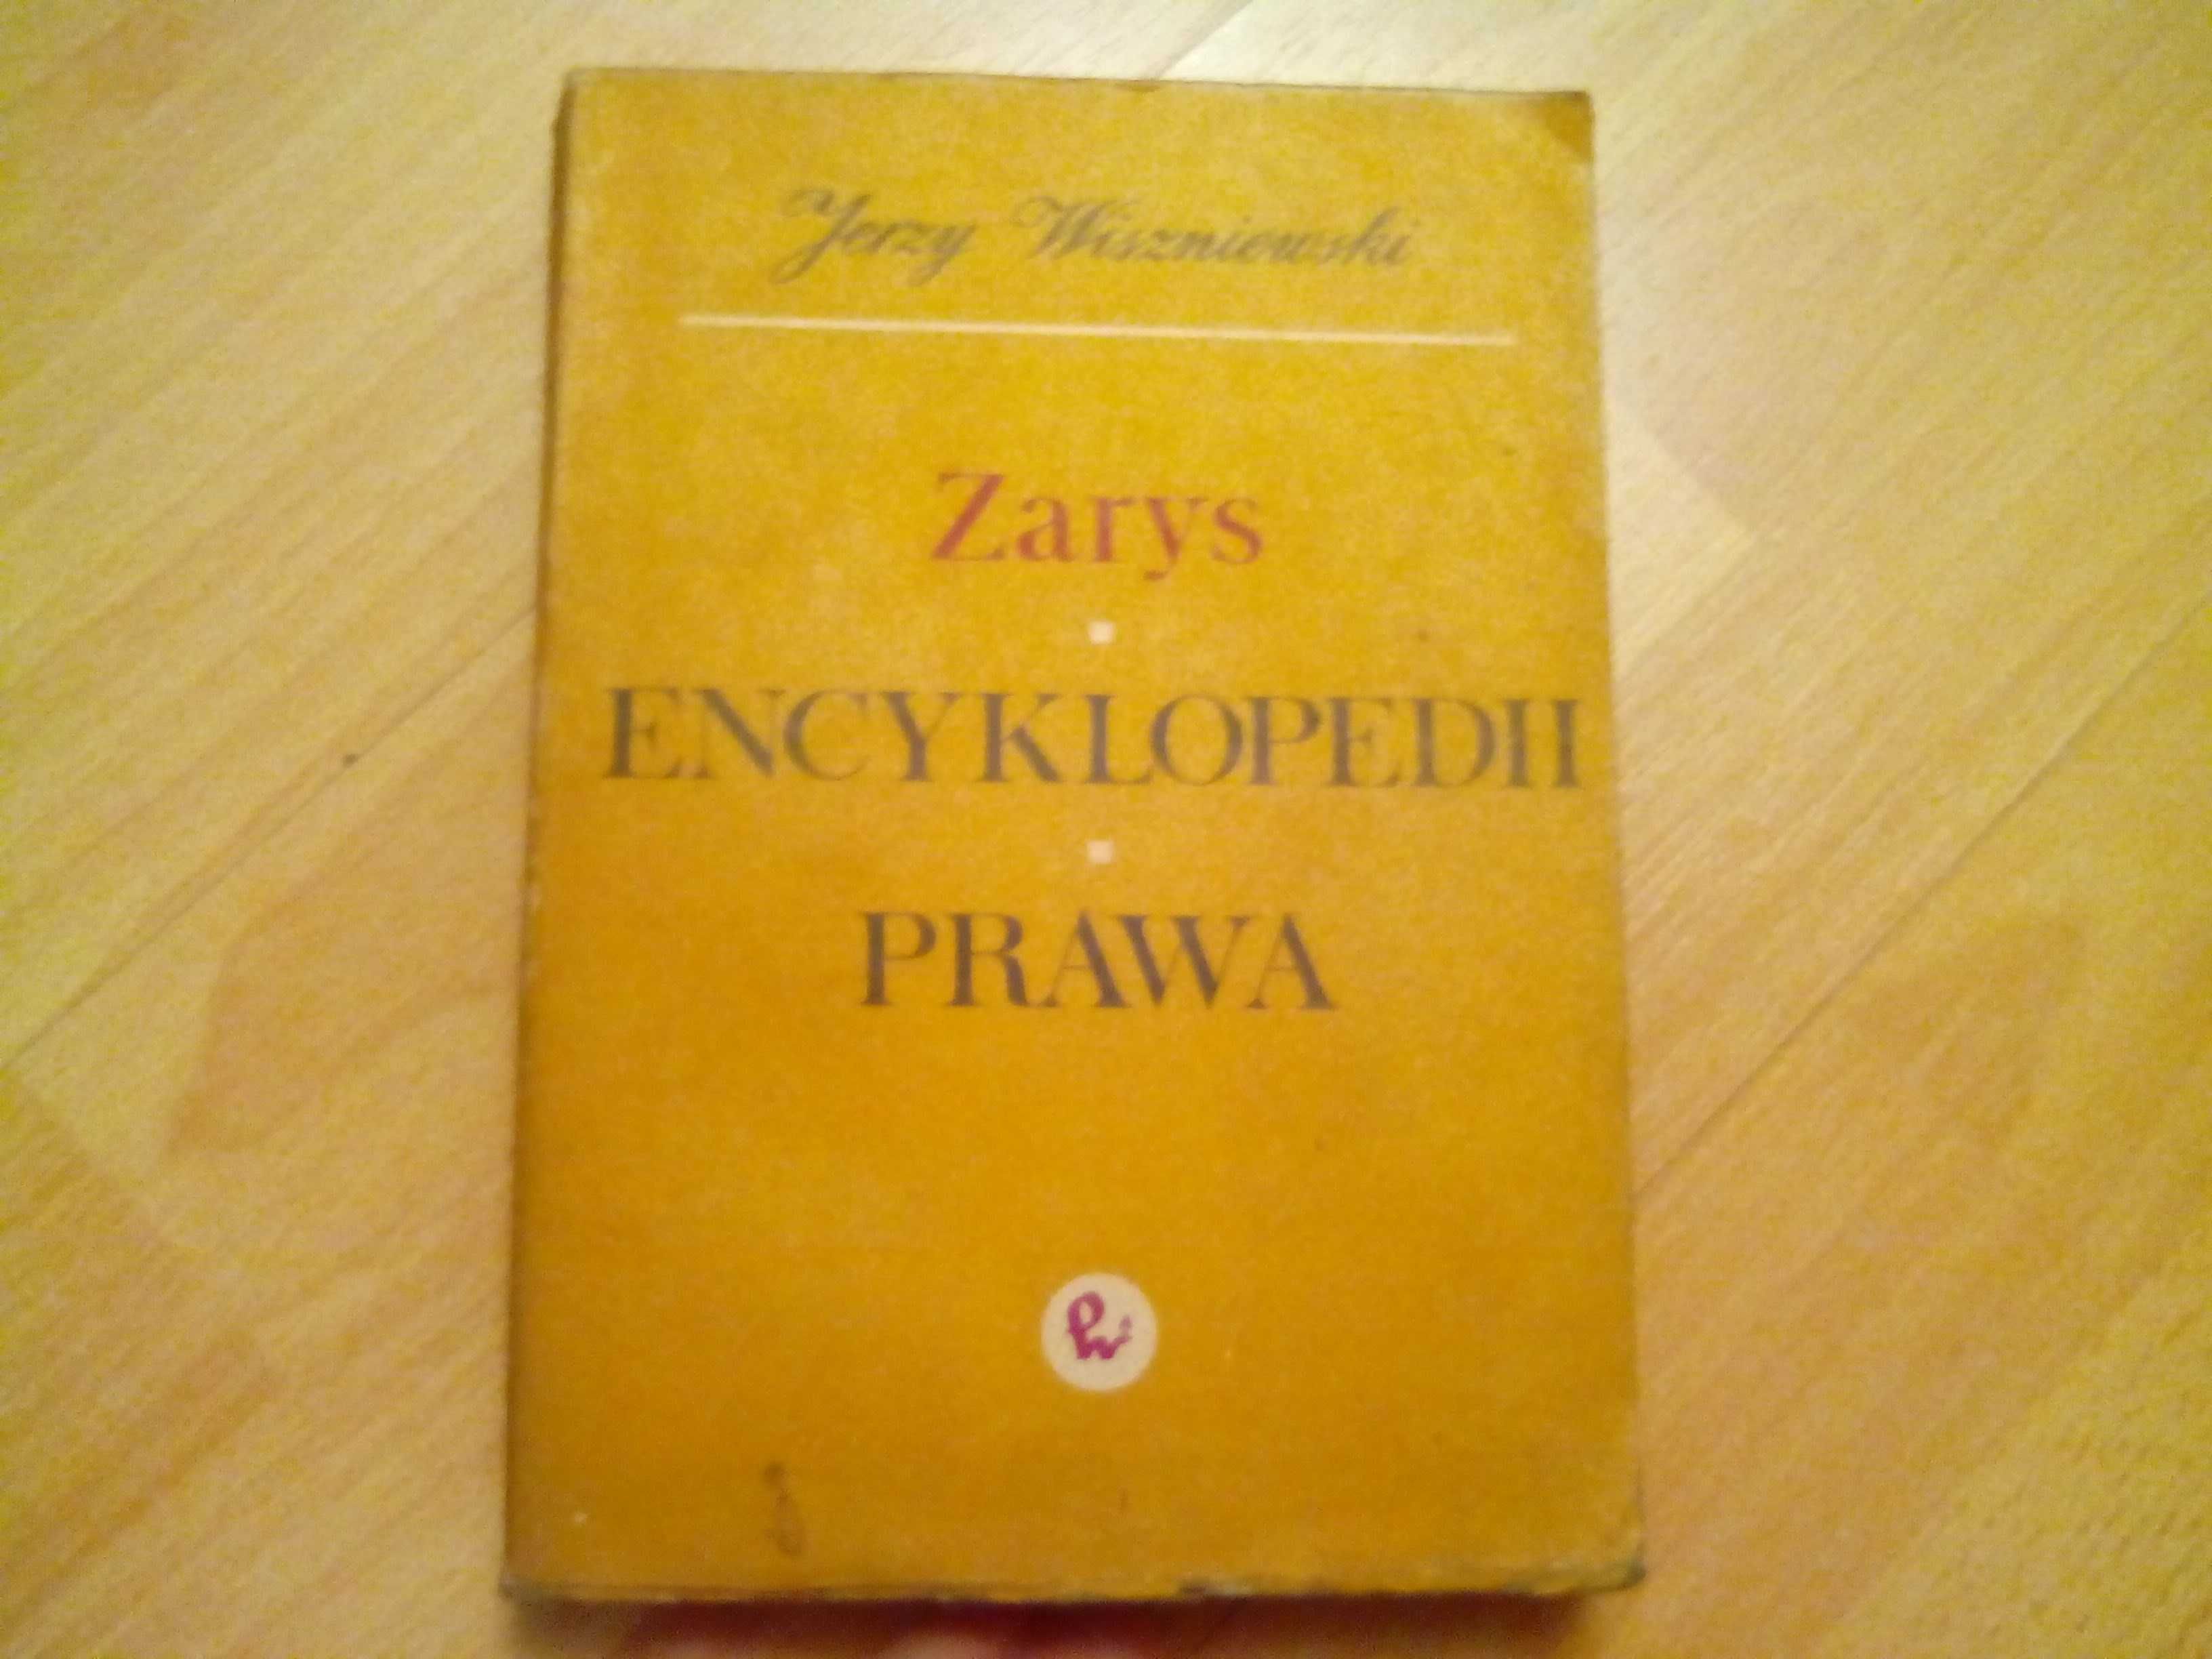 Zarys encyklopedii prawa. Jerzy Wiszniewski